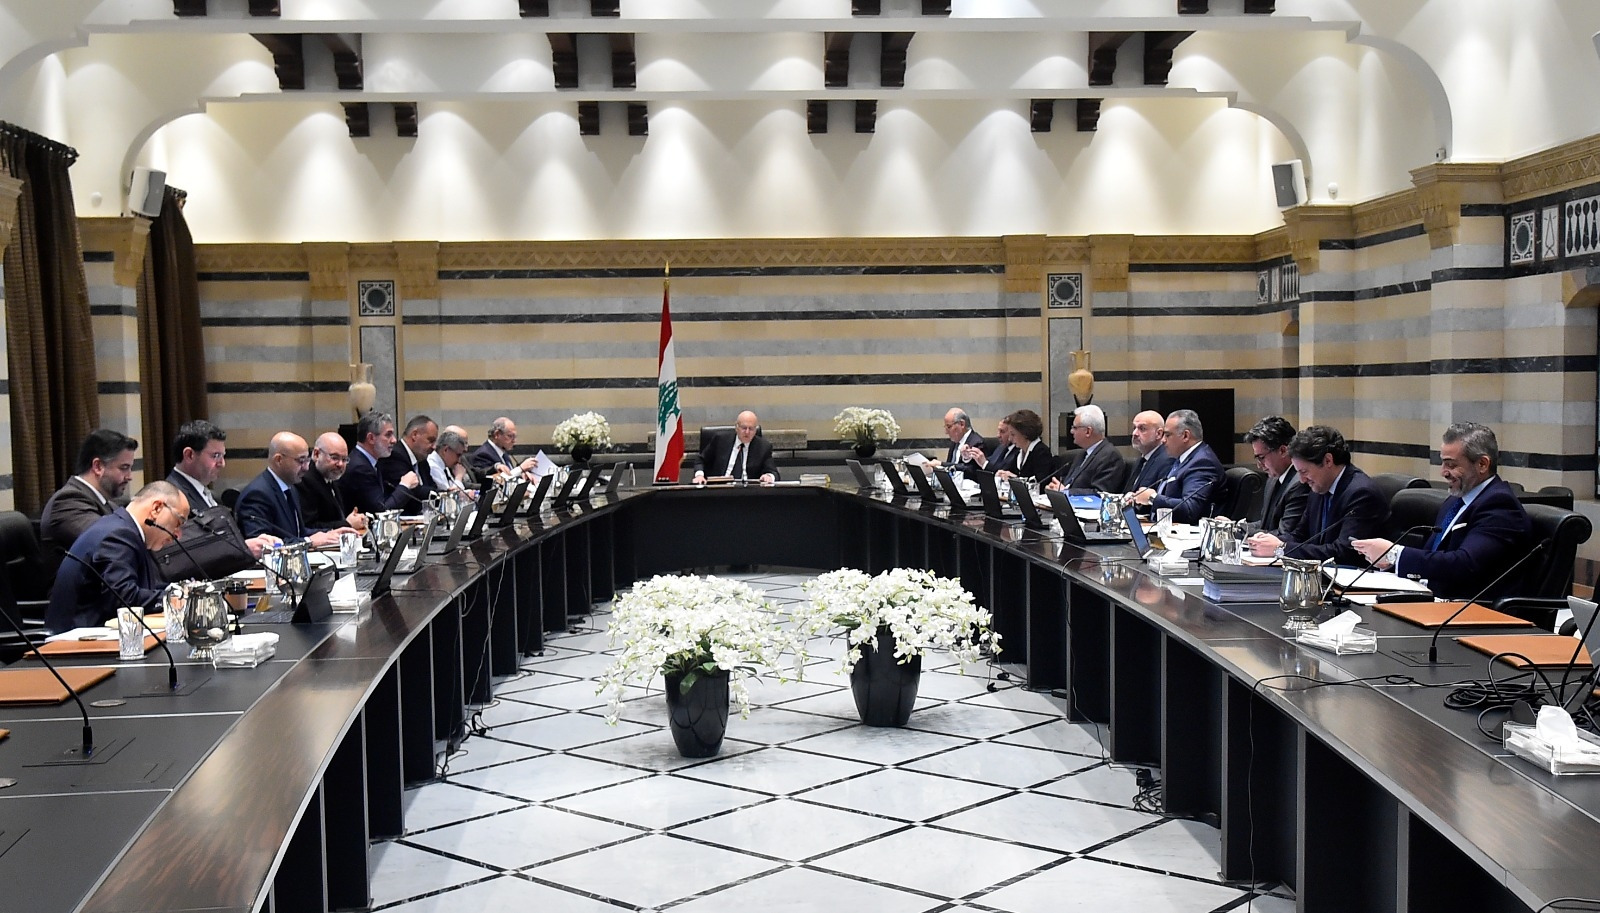 جلسة مجلس الوزراء: عرض لخطط حول النازحين السوريين ورئاسة الجمهورية